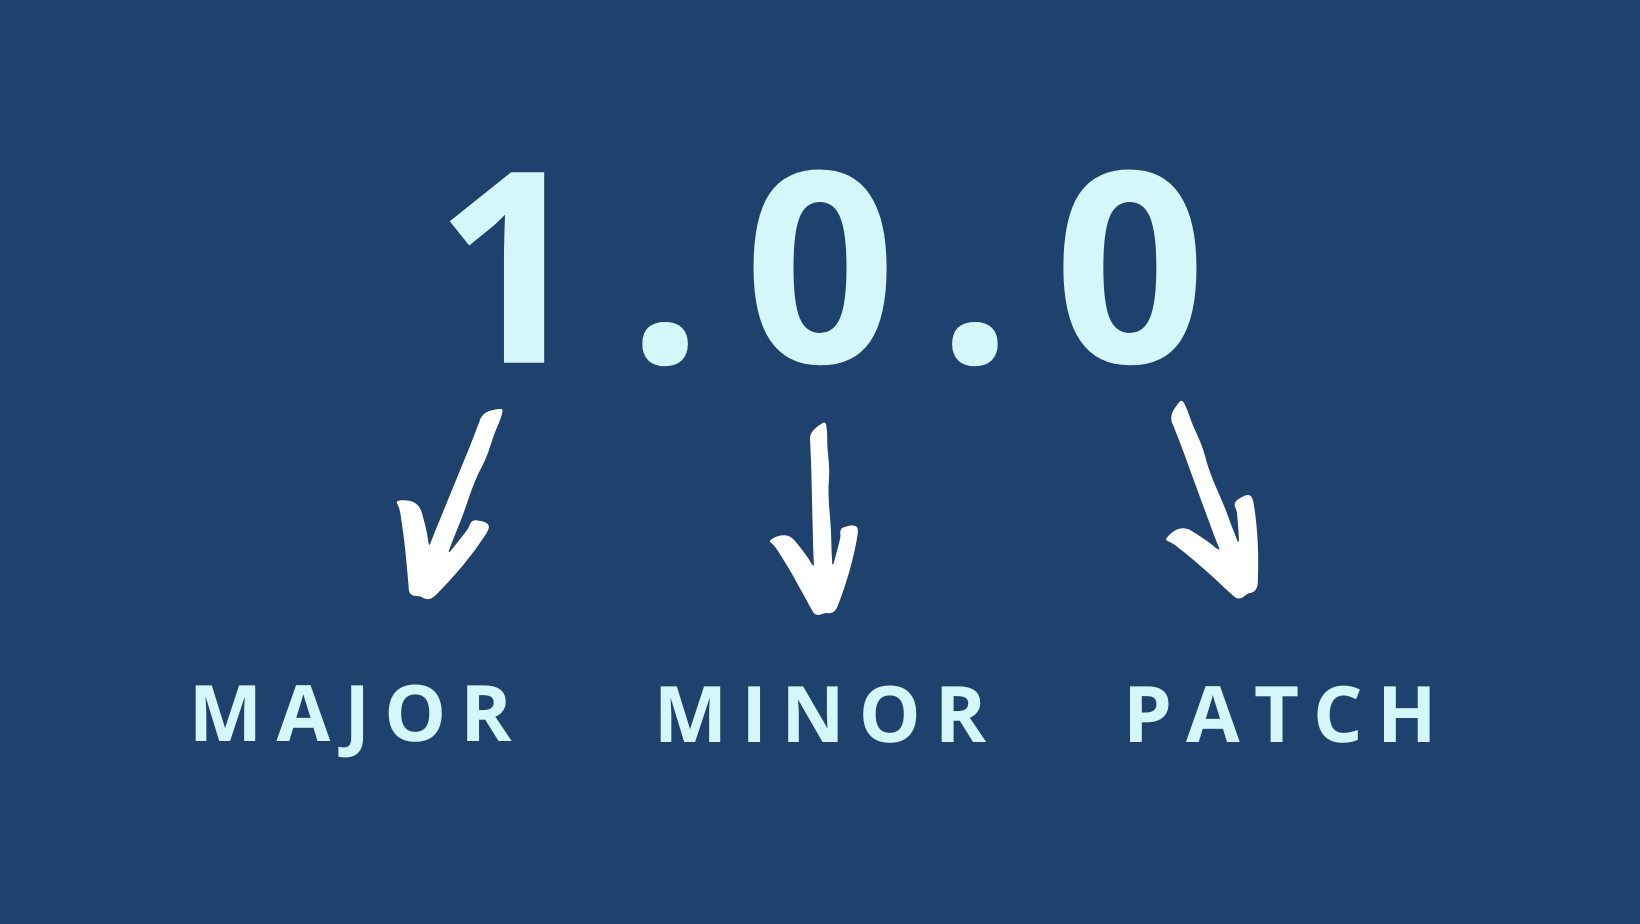 Figura colorida que mostra o formato de uma versão. Ao fundo há a cor sólida azul, e no primeiro plano temos um texto escrito na cor branca “1.0.0”. Abaixo temos as palavras “MAJOR, “MINOR”, “PATCH” que são relacionadas a  cada número 1.0.0  por  meio de uma seta. Ou seja, “1” e “MAJOR” estão ligados por uma seta, bem como “0” e “MINOR” e “0” e “PATCH”.